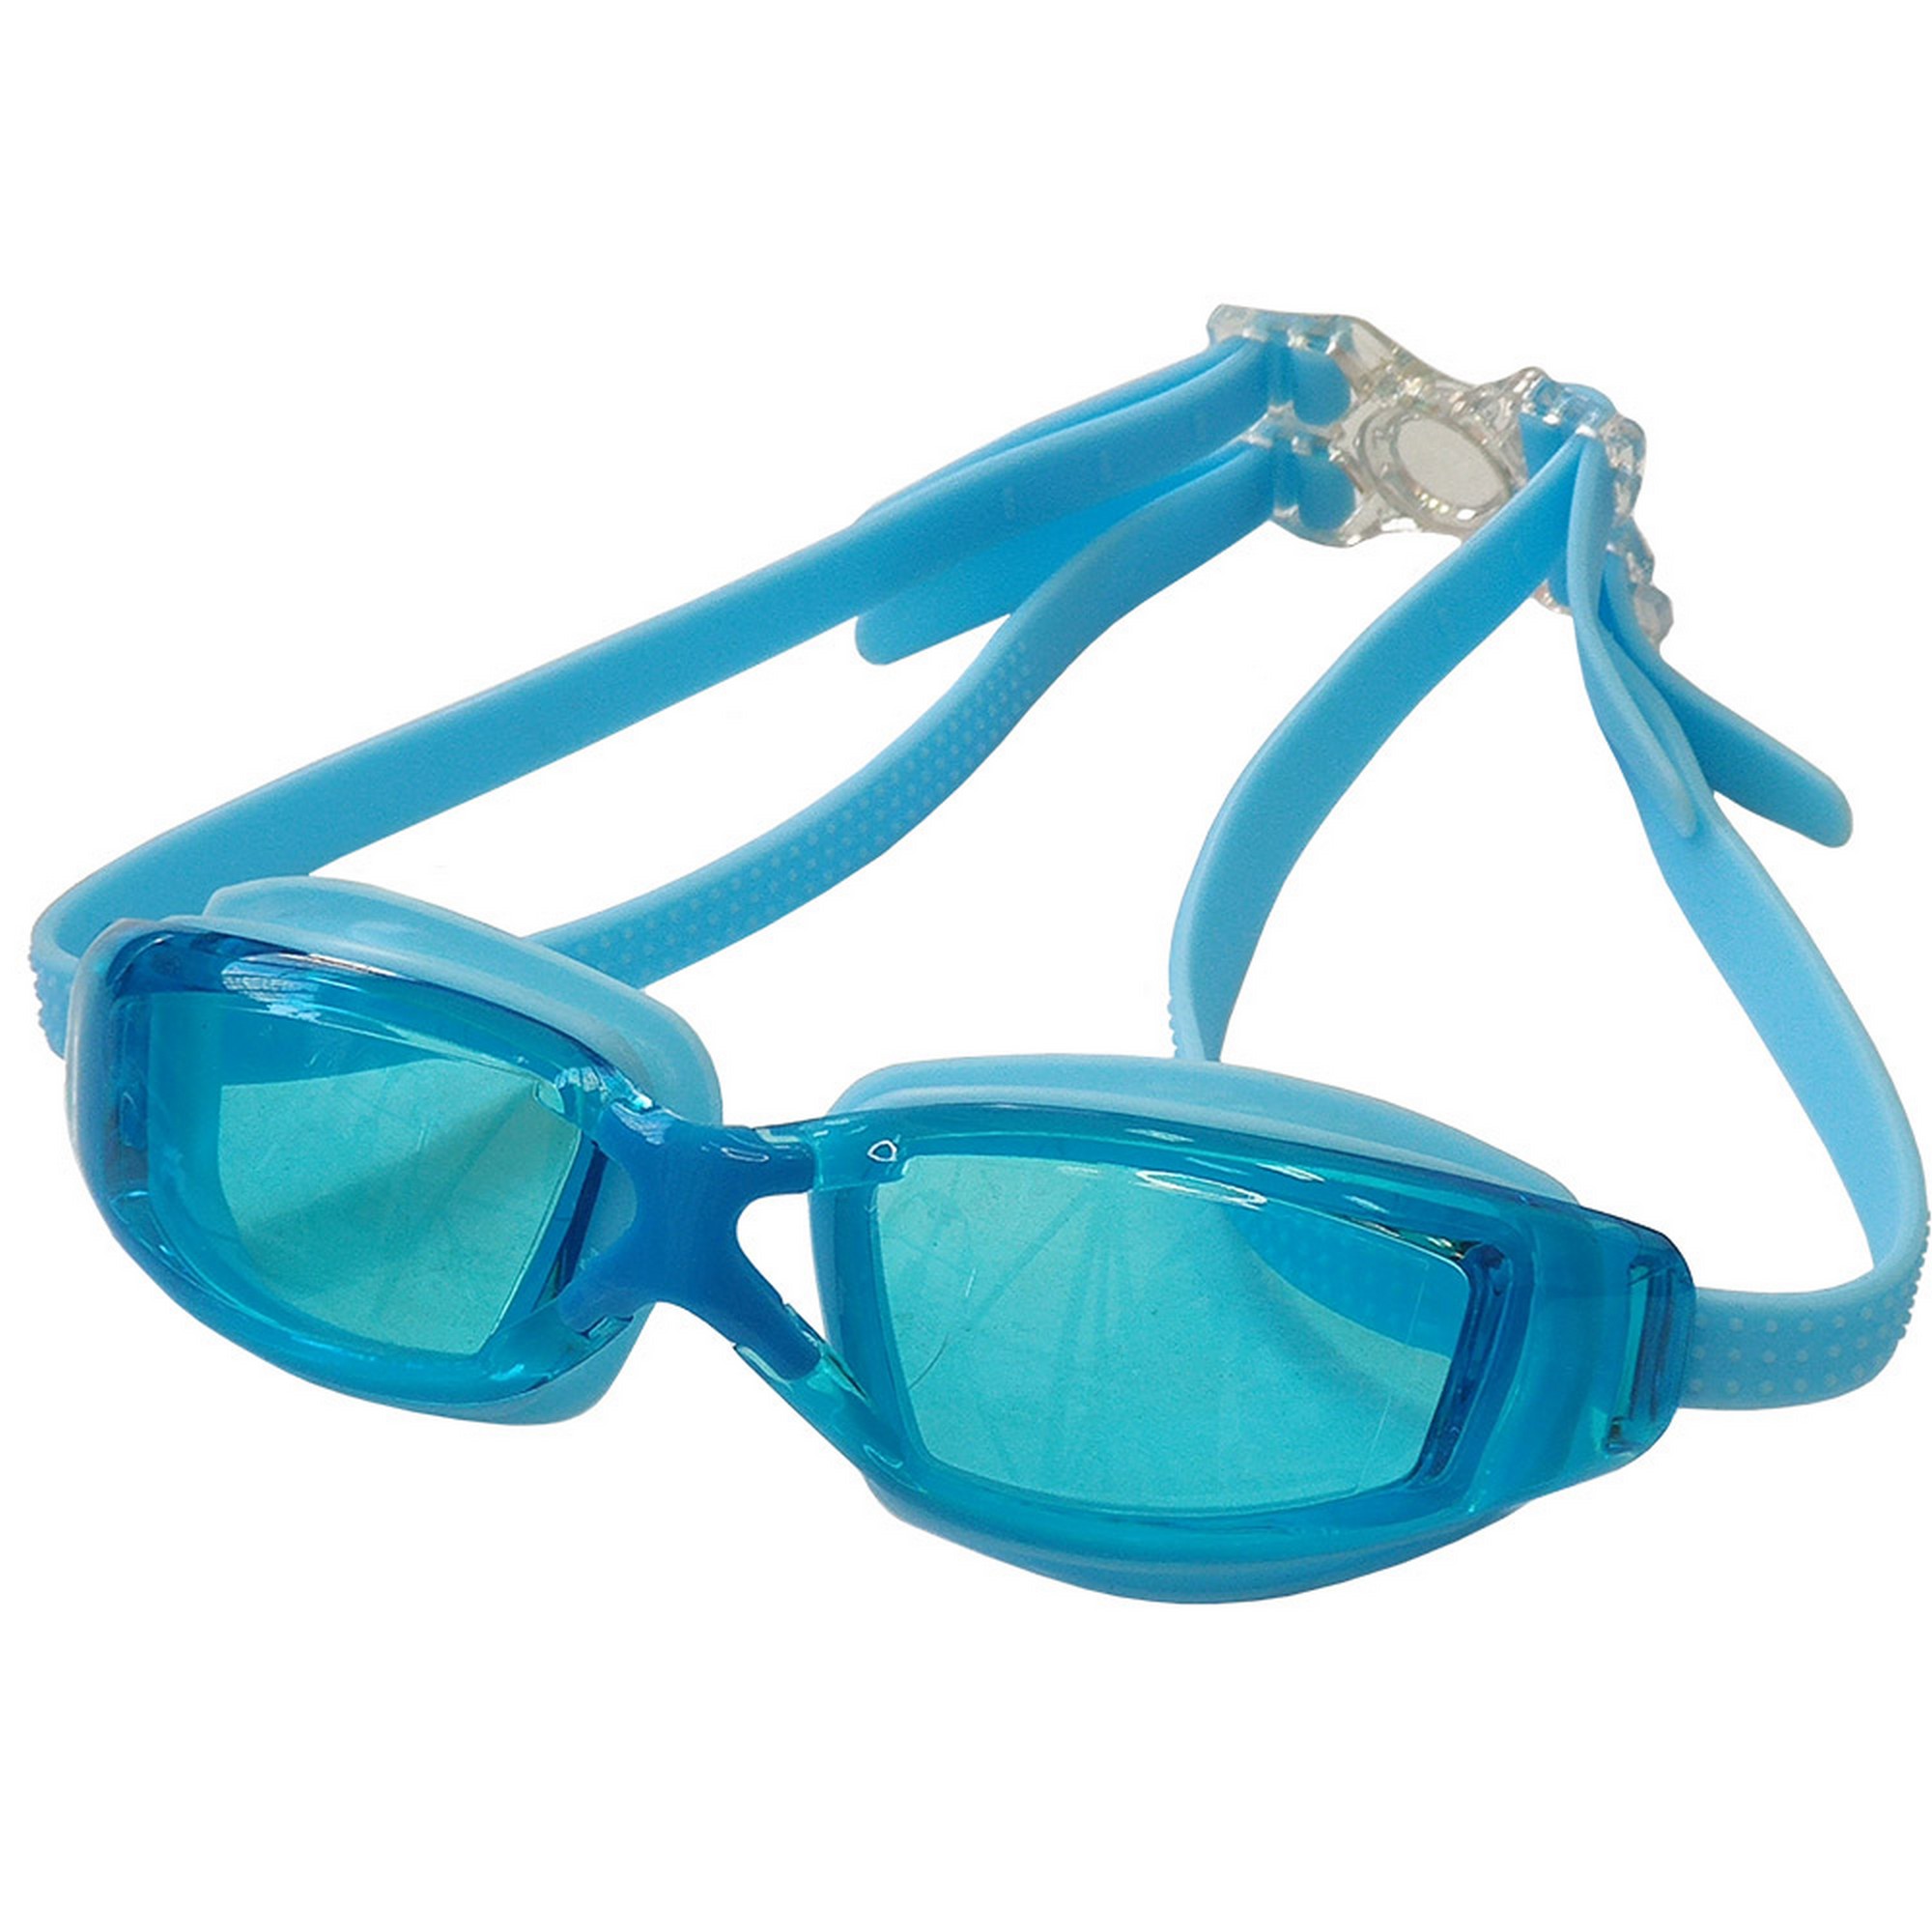 Очки для плавания Sportex взрослые E38895-0 голубой,  - купить со скидкой